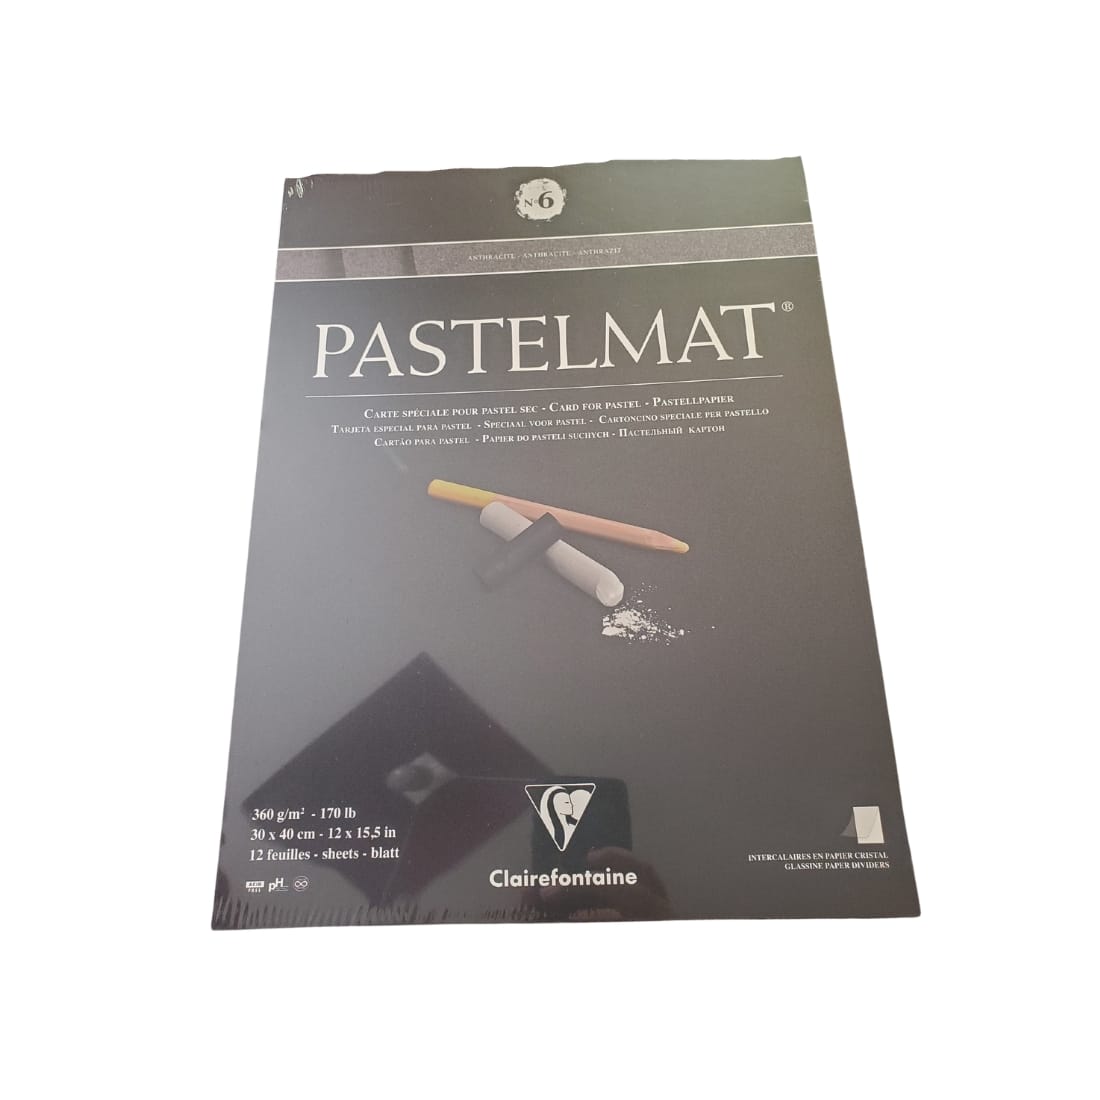 PASTELMAT – CARTES POUR PASTEL -N6 30x40cm 360GR